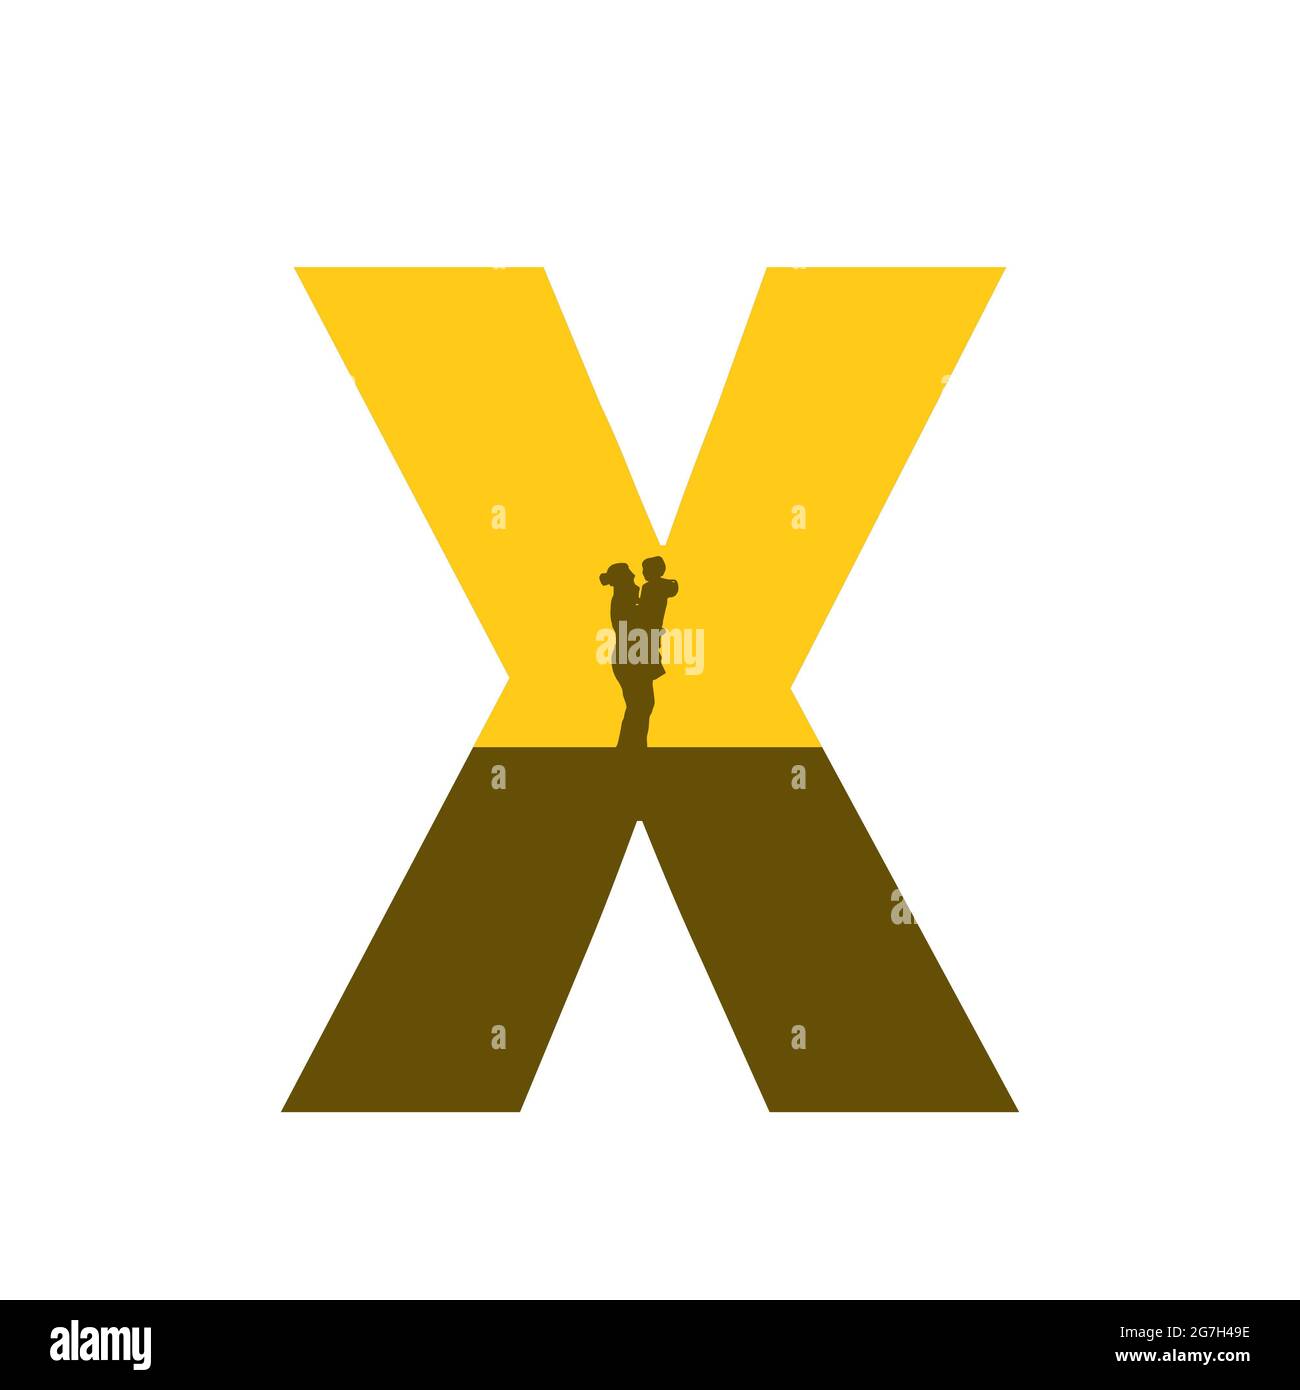 Lettre X de l'alphabet avec une silhouette de mère avec enfant sur le bras, de couleur ocre et marron, isolée sur fond blanc Banque D'Images